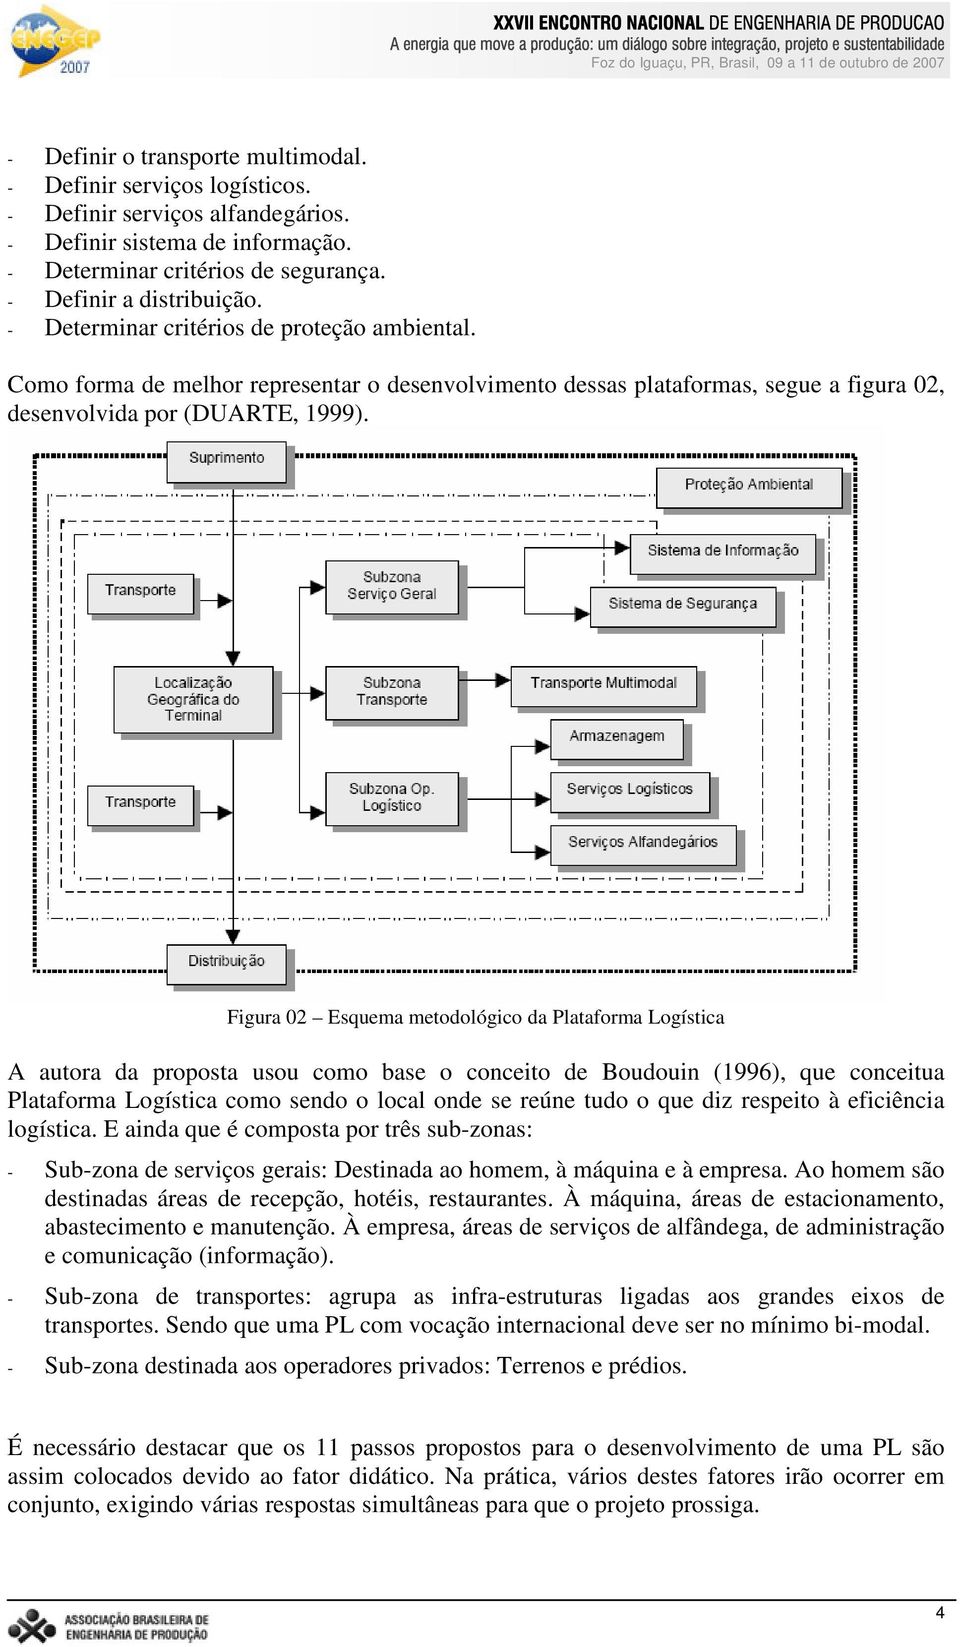 Figura 02 Esquema metodológico da Plataforma Logística A autora da proposta usou como base o conceito de Boudouin (1996), que conceitua Plataforma Logística como sendo o local onde se reúne tudo o